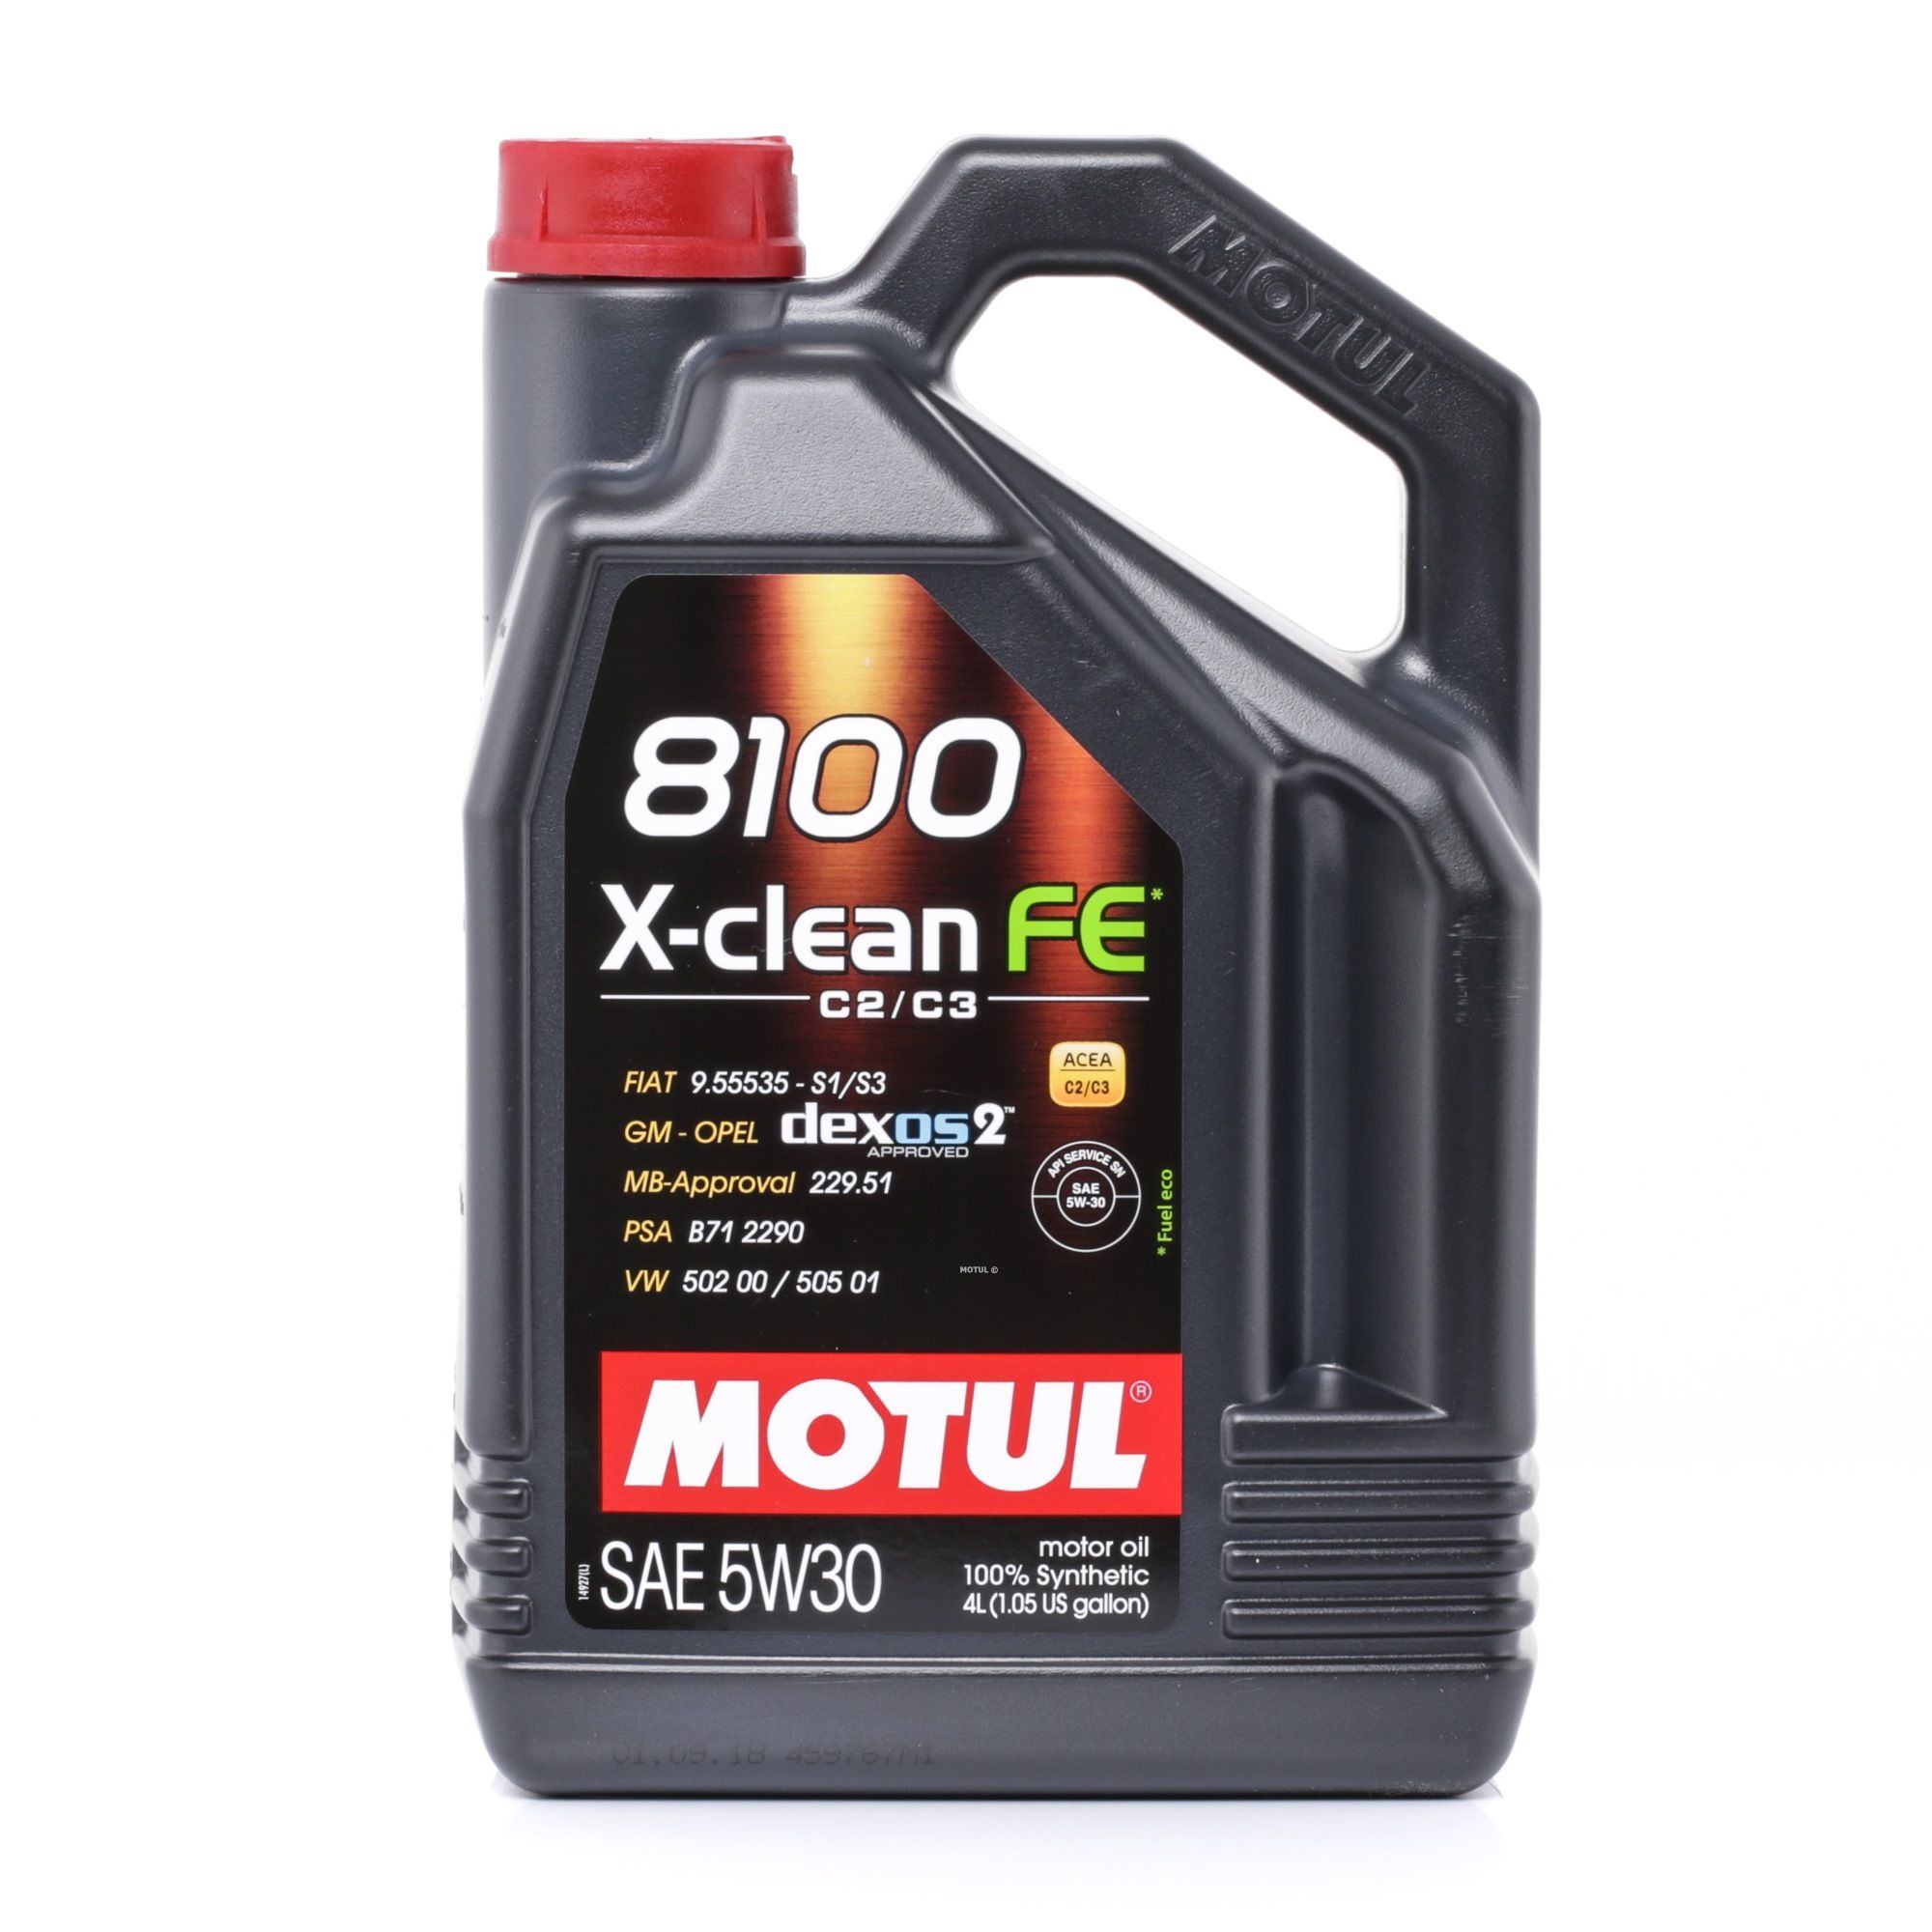 TOYOTA MOTUL X-CLEAN FE 5W-30, 4l, Synthetiköl Motoröl 104776 günstig